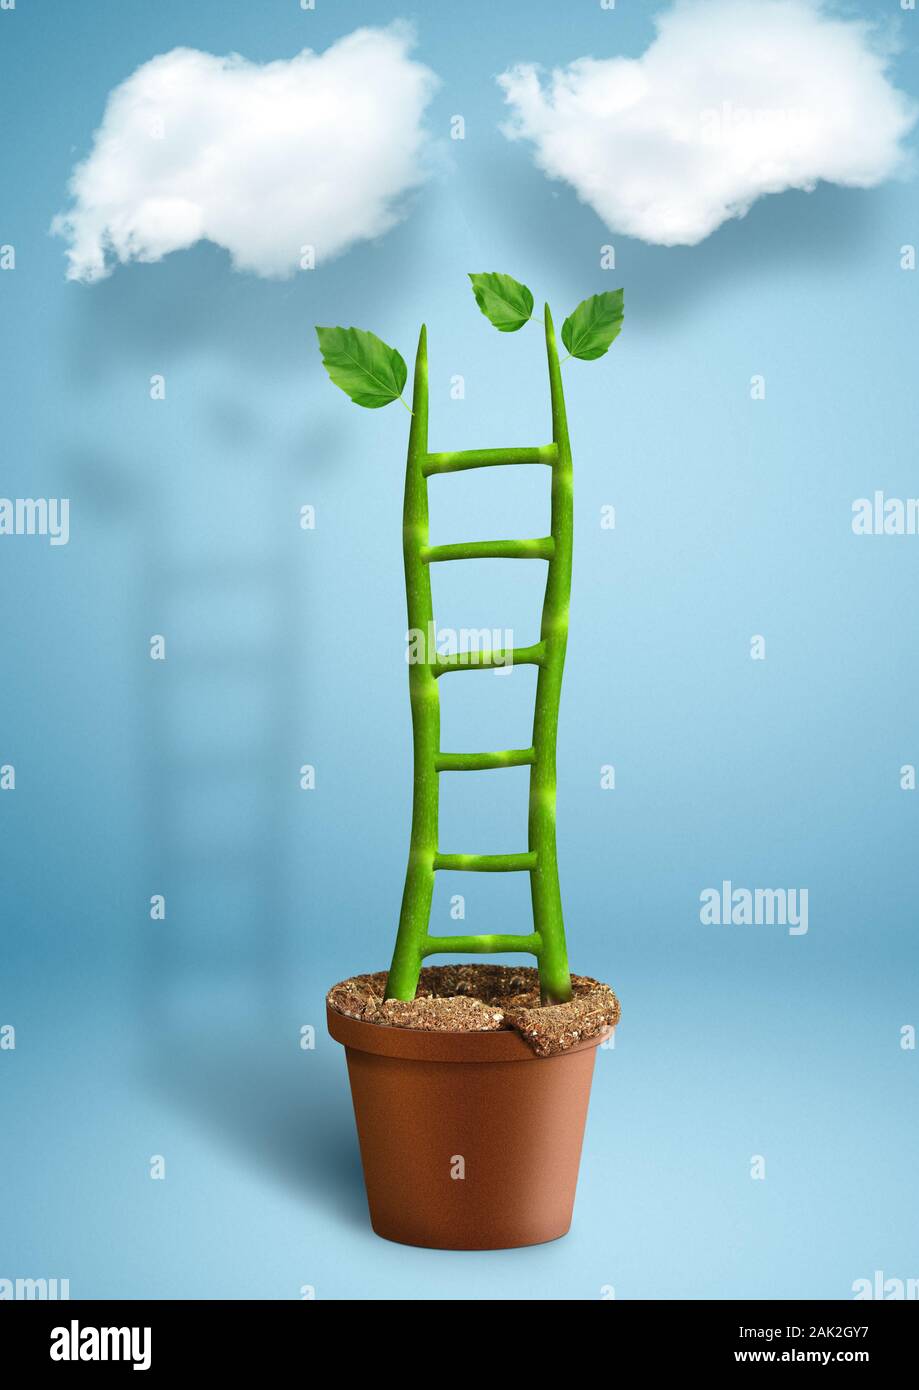 Escalera del éxito el concepto creativo, el crecimiento de las plantas en maceta como escalera Foto de stock